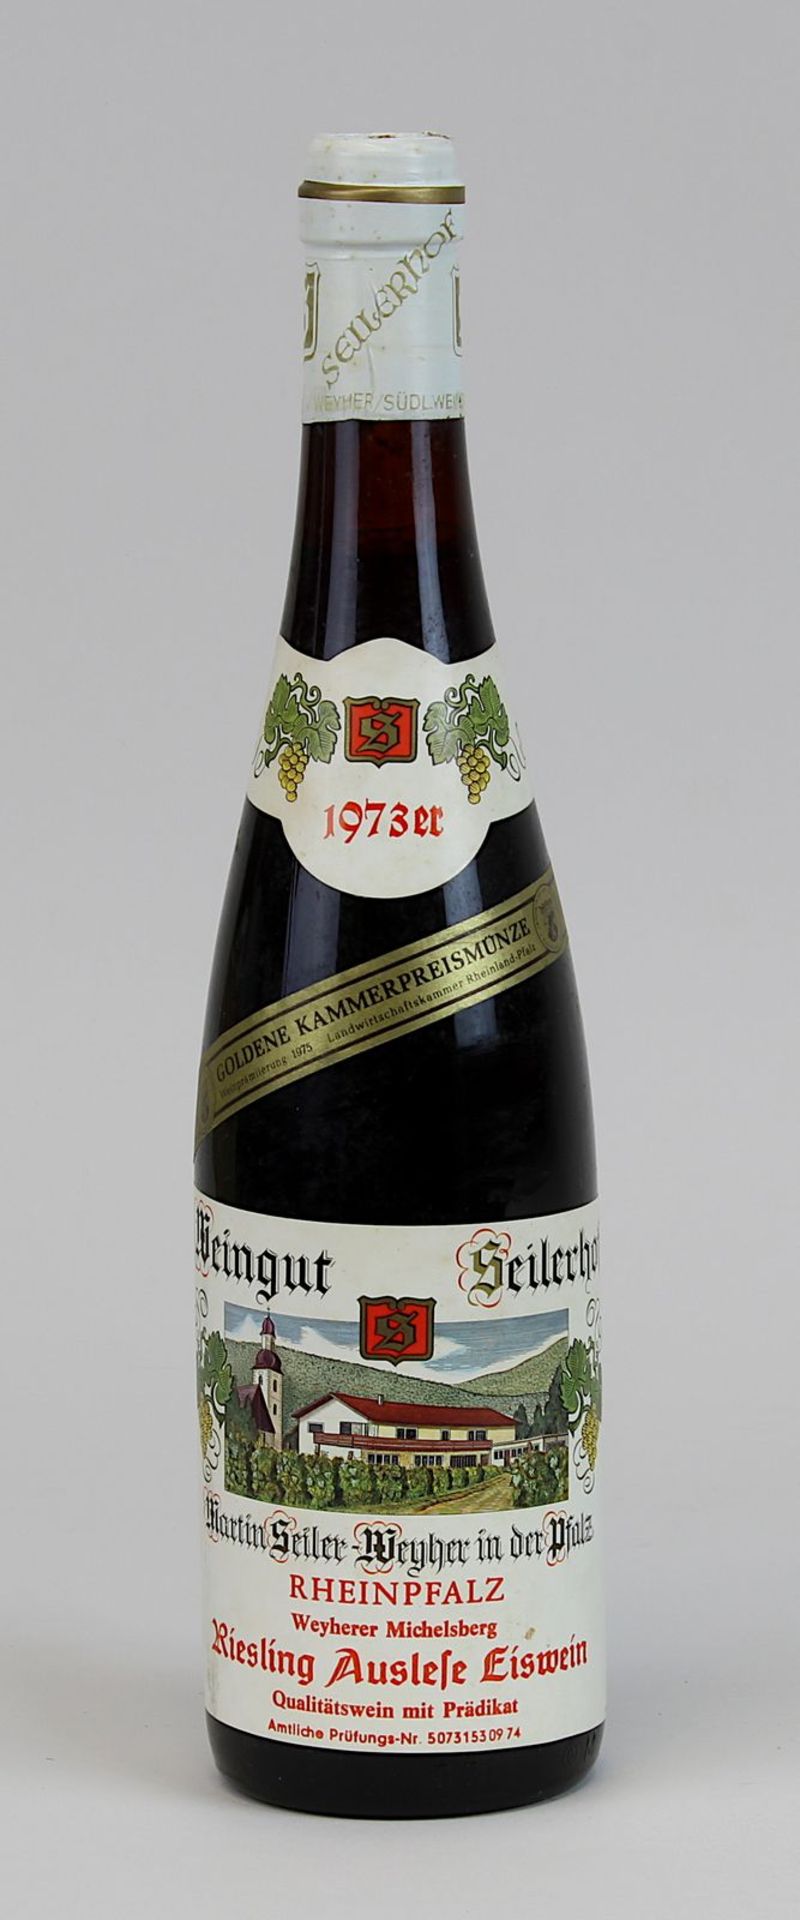 Eine Flasche 1973er Weyherer Michelsberg, Riesling Auslese Eiswein, Weingut Seilerhof Rheinpfalz,